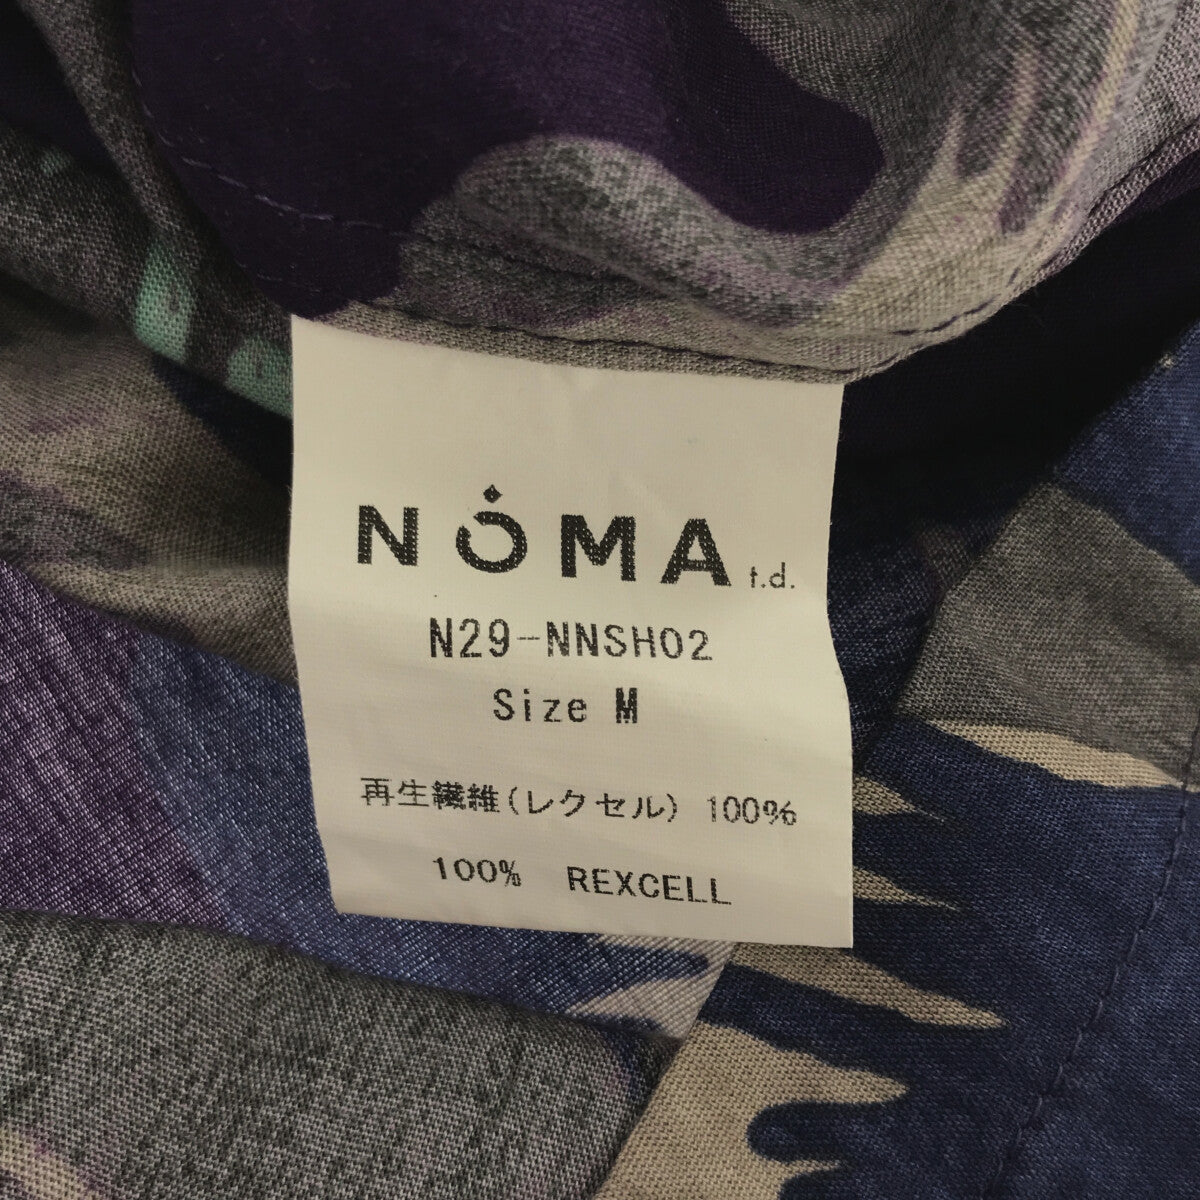 Needles / ニードルス | × NOMA t.d. ITALIAN COLLAR SHIRT / イタリアンカラーシャツ | M | メンズ